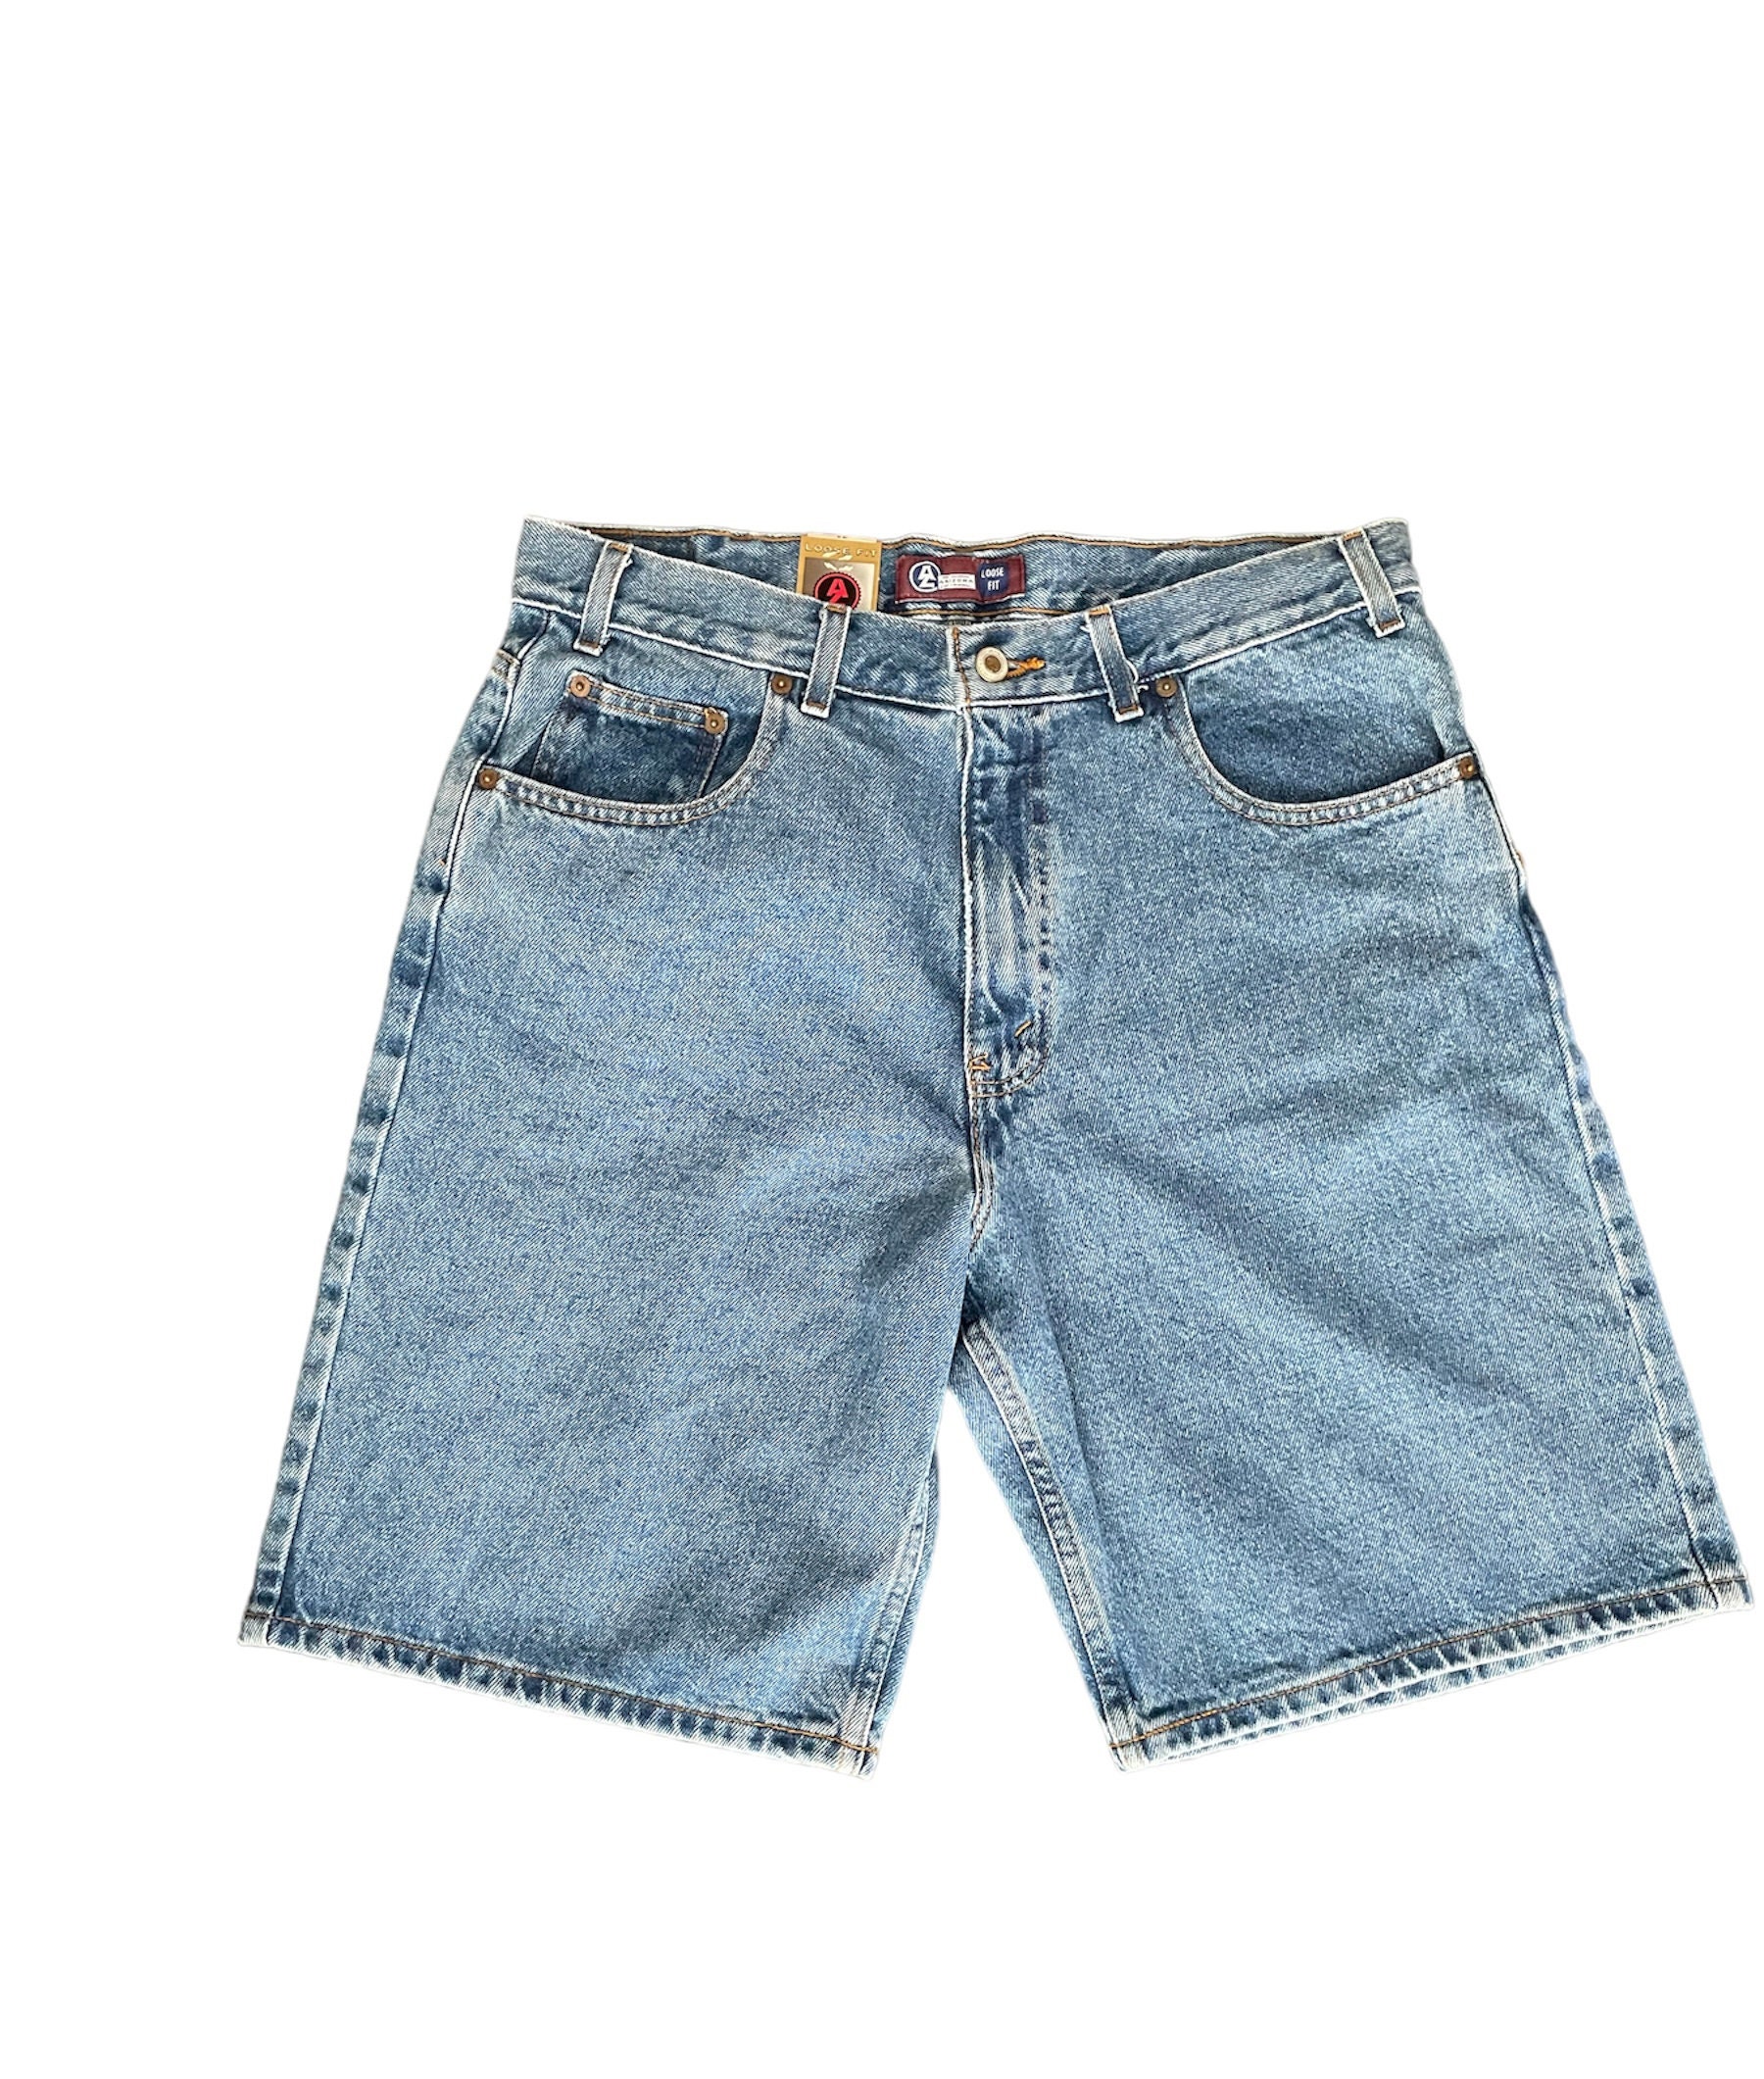 Arizona Jeans Shorts - Etsy